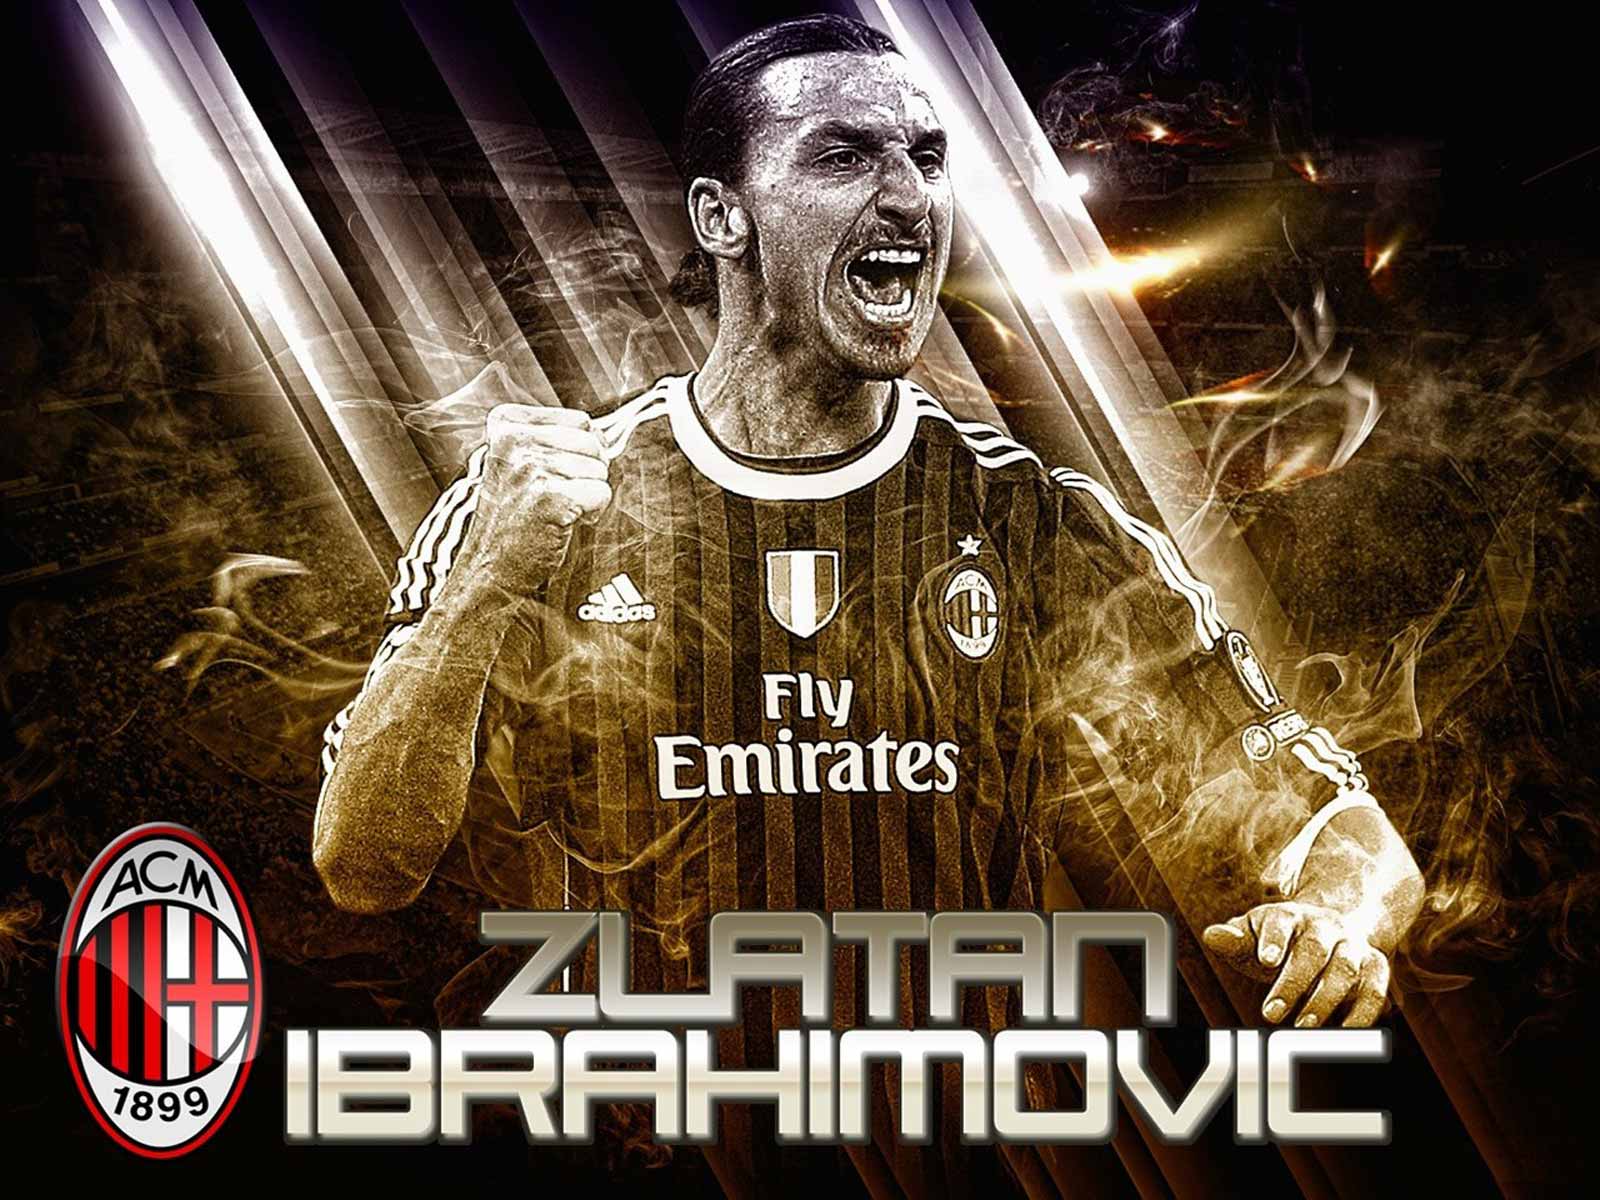 Zlatan Ibrahimovic AC Milan HD Wallpaper WallpaperCowcom